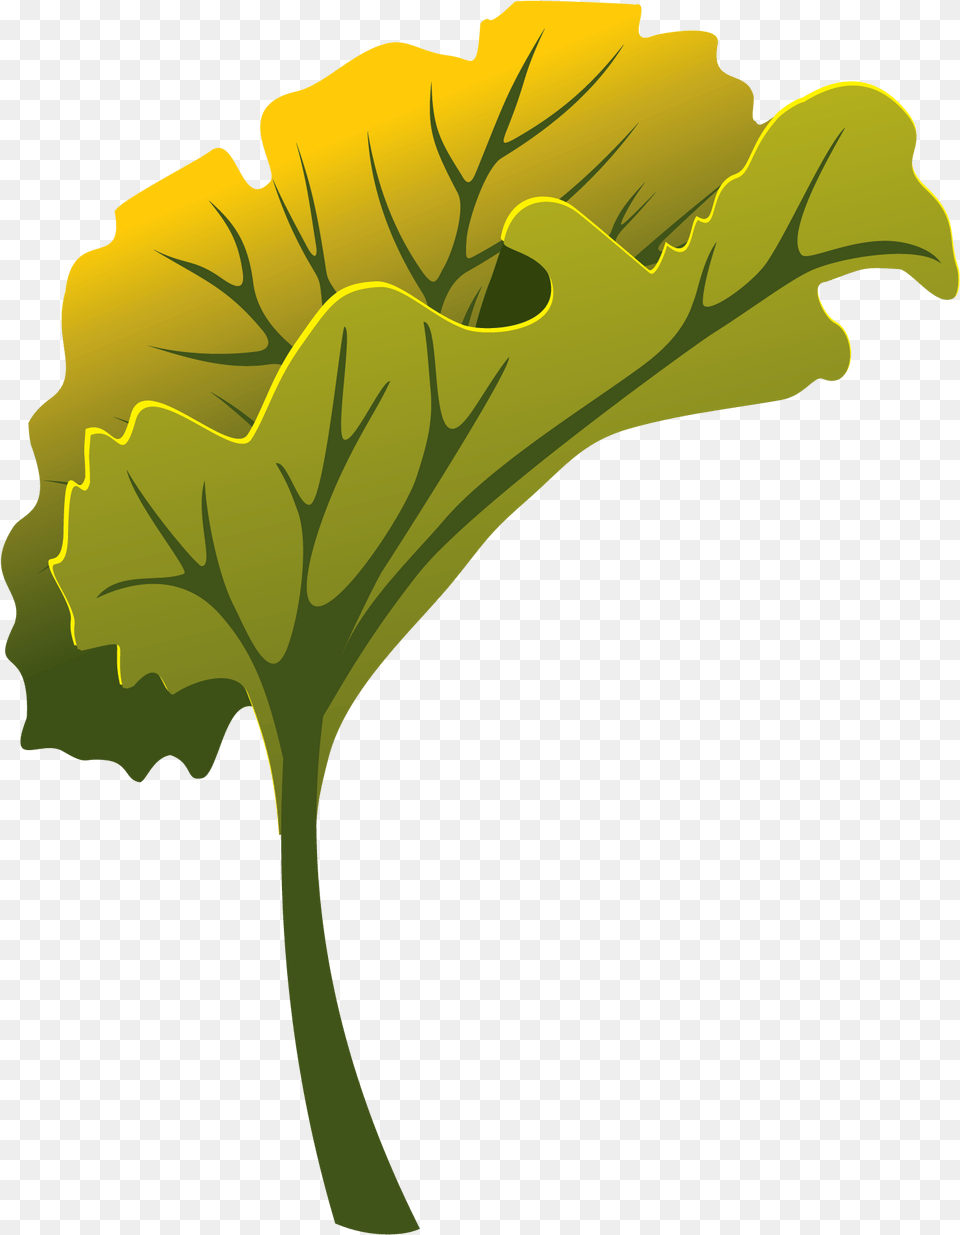 Clip Art, Leaf, Plant, Flower, Geranium Free Transparent Png